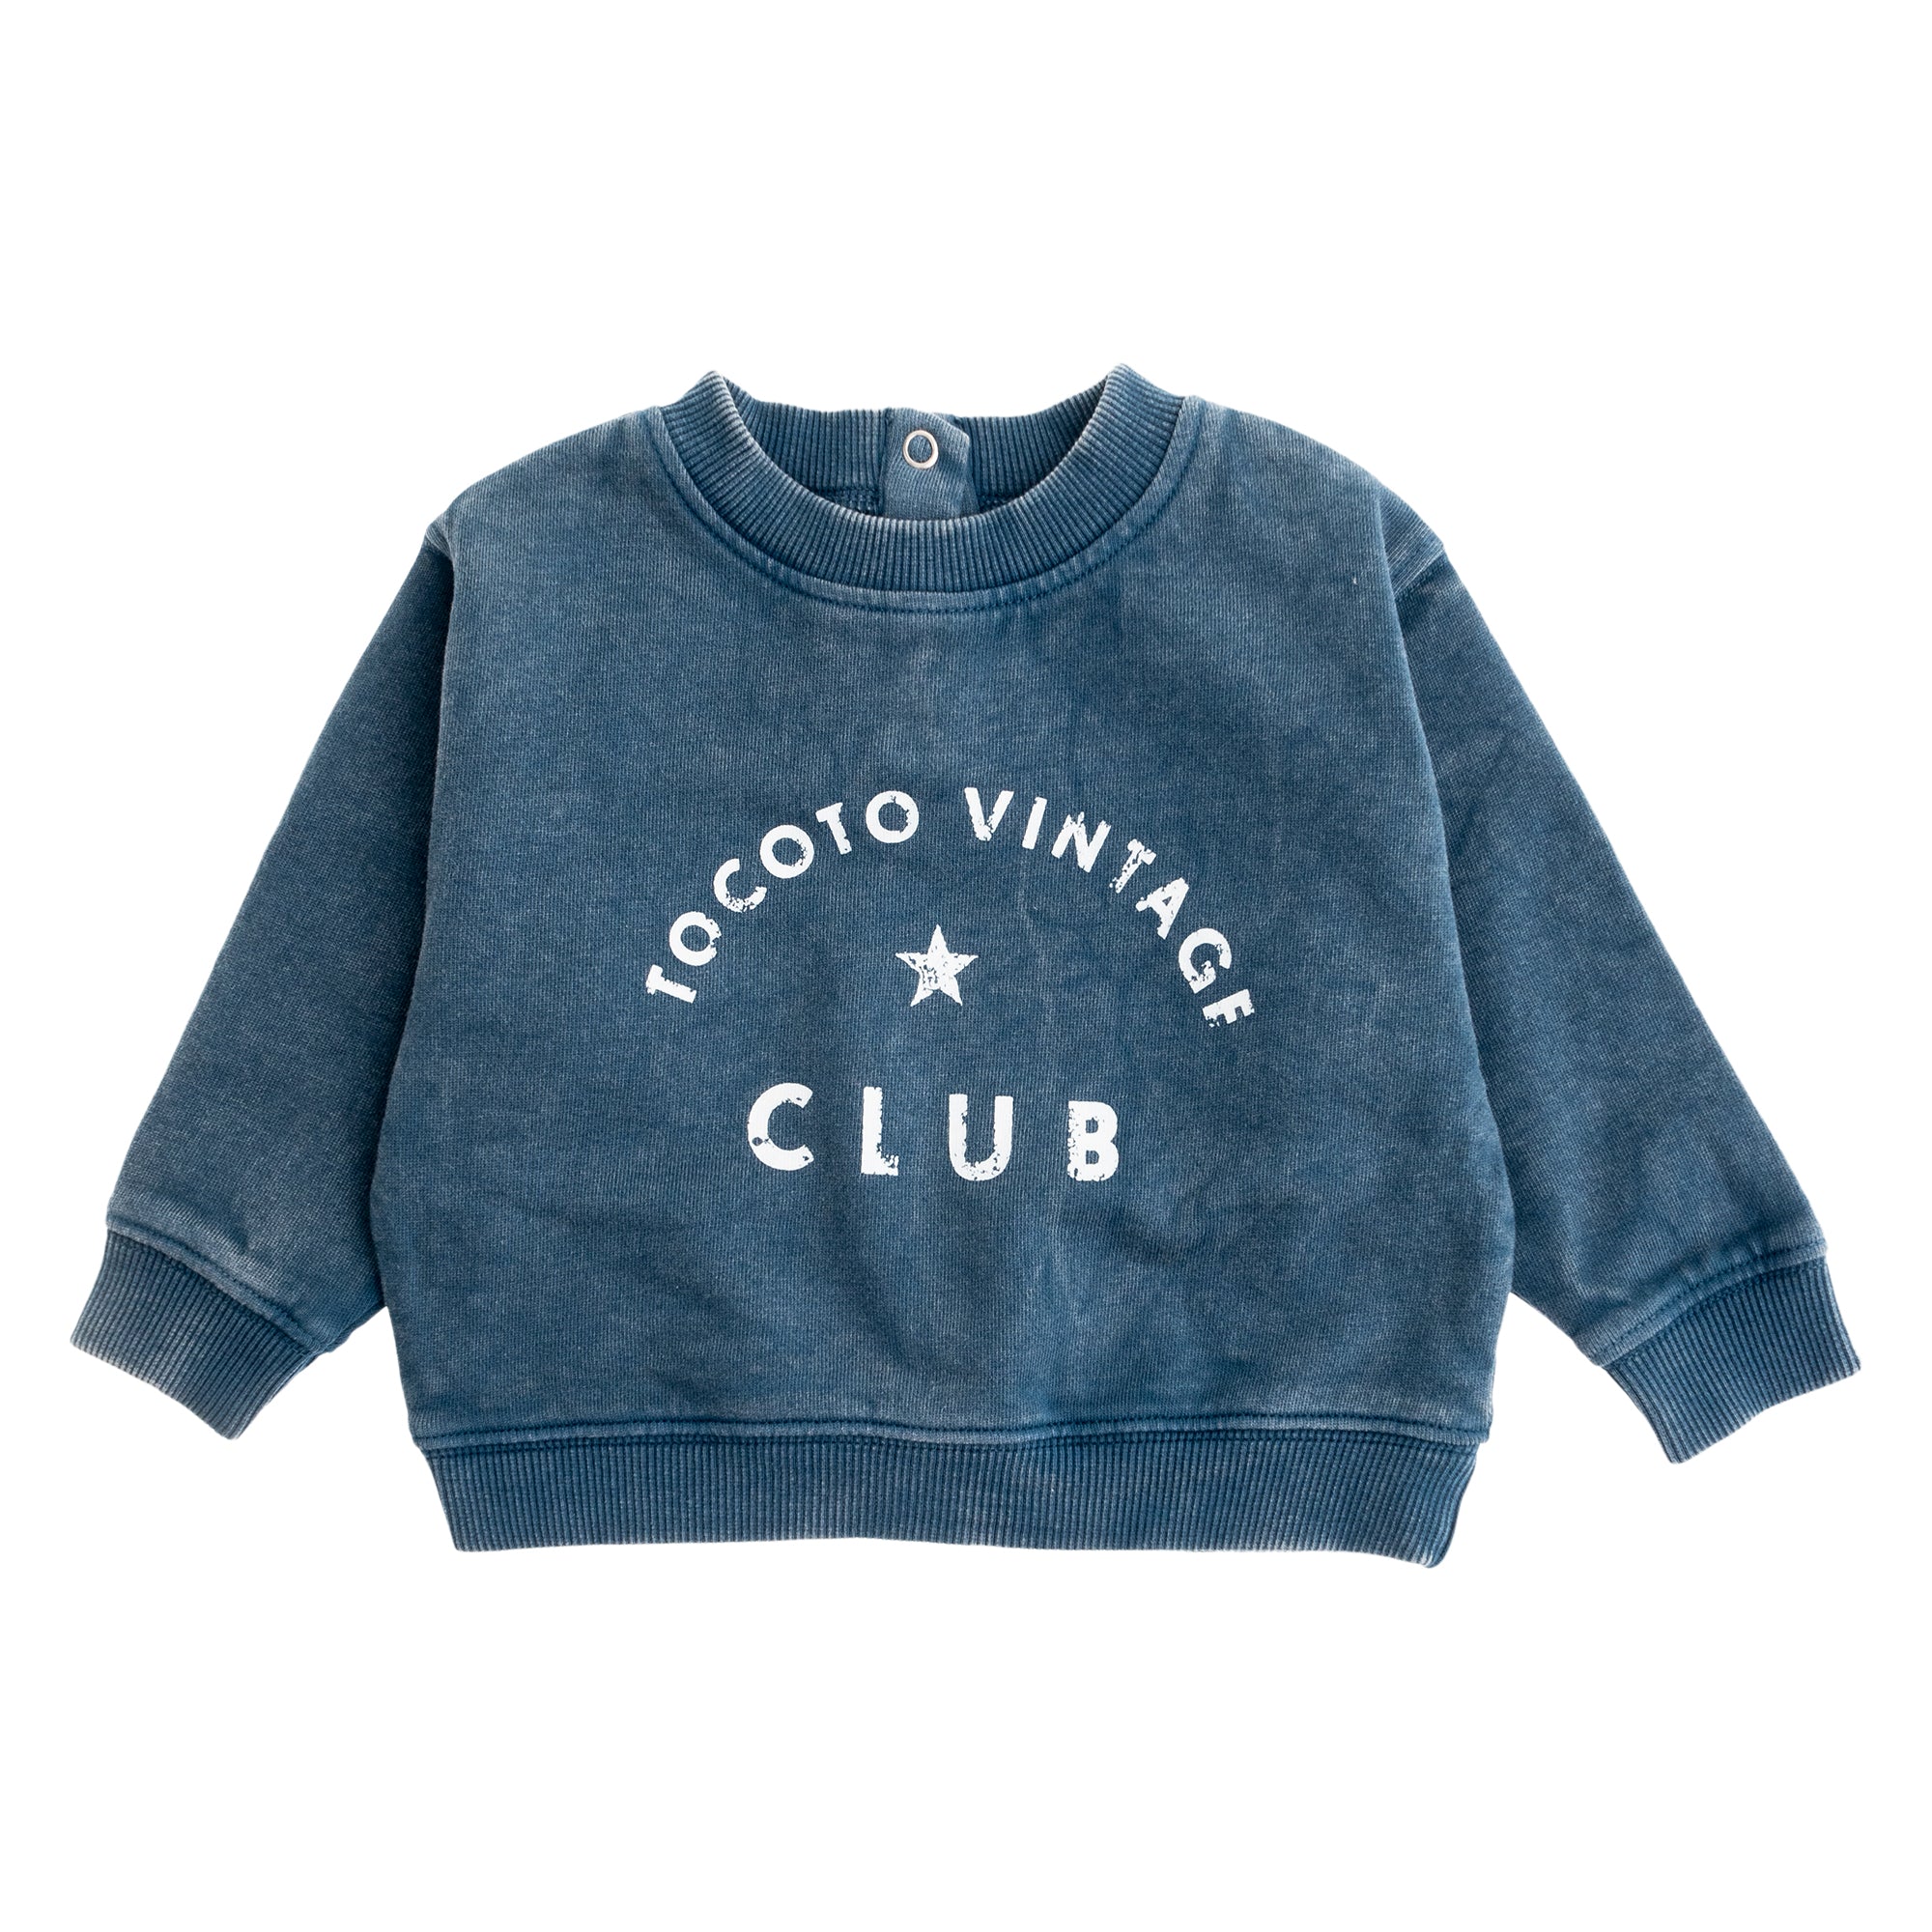 Tocoto Vintage Sweatshirt "Tocoto Vintage Club" - Blue